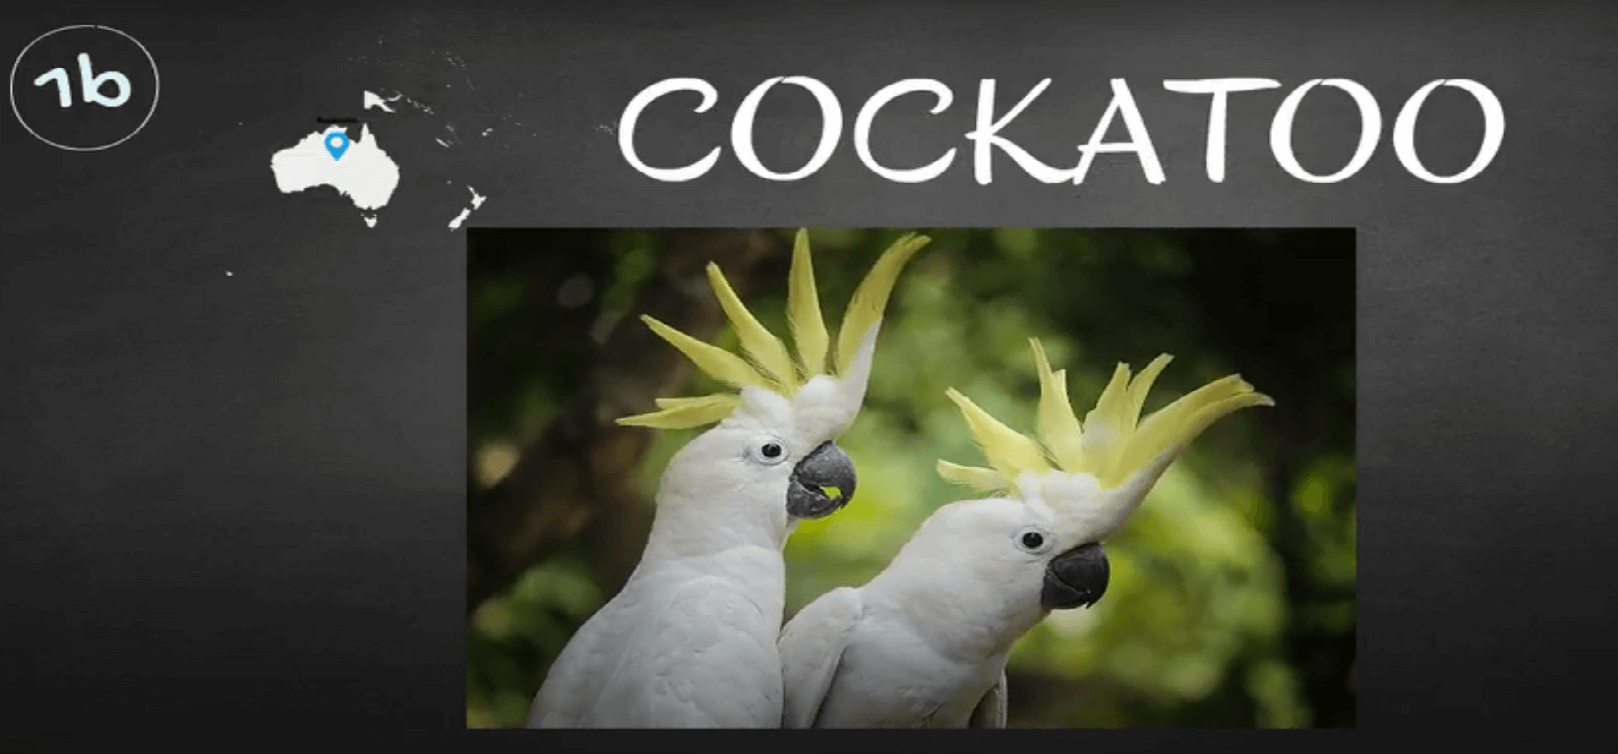 where do cockatoo parrots live